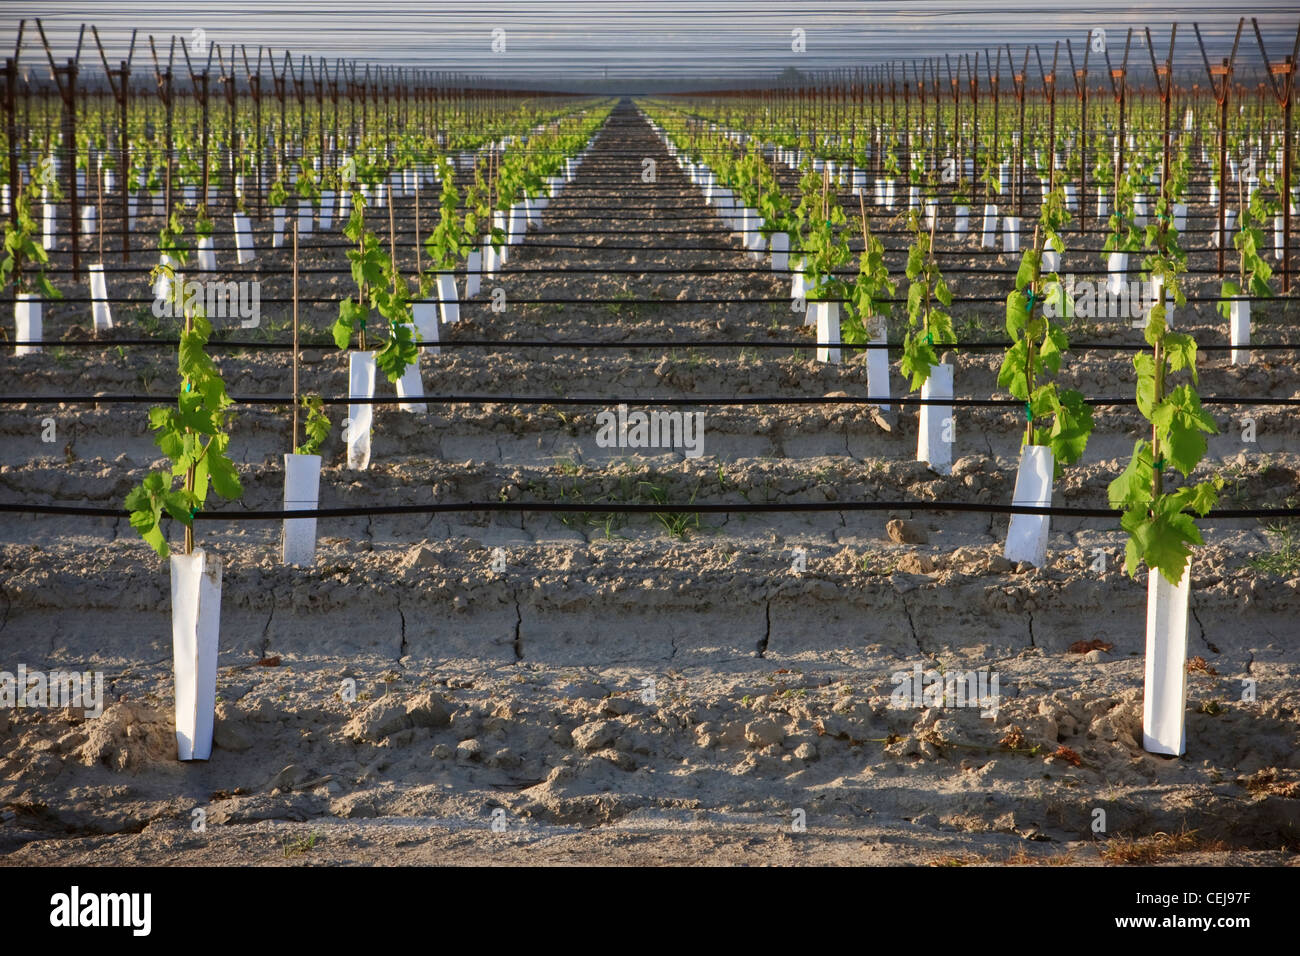 Landwirtschaft - ein Junge Tafeltrauben Weinberg mit einem Overhead Spalier, System, Tropfbewässerung und Bepflanzung Ärmel / Kalifornien Stockfoto